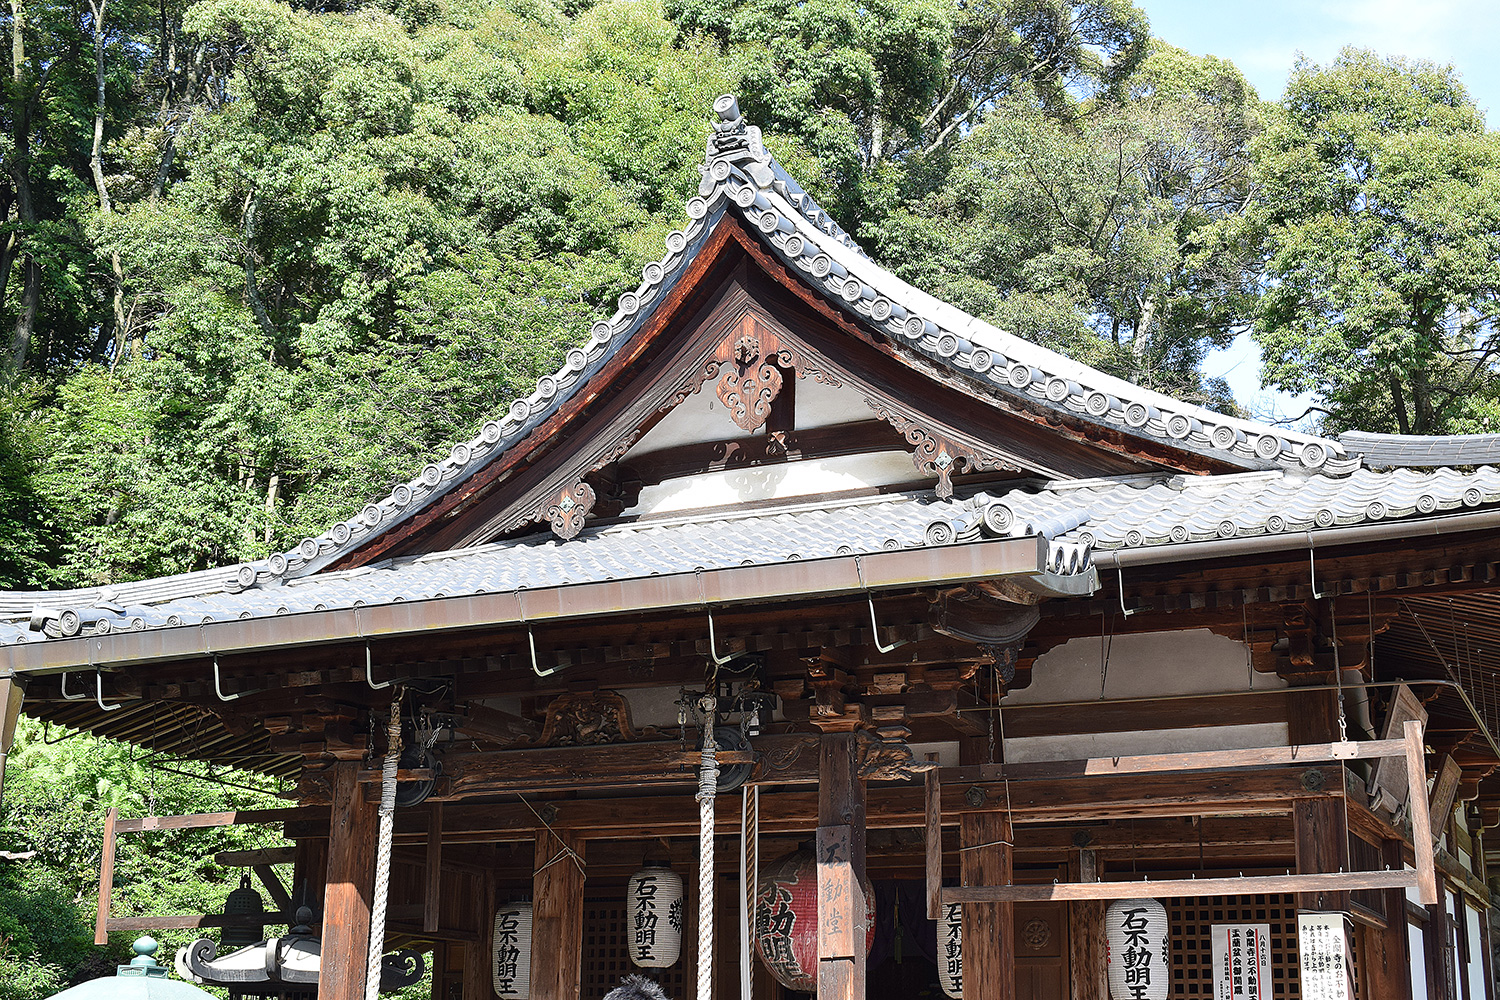 Kinkaku Ji Templo Do Pavilhao Dourado Viaja Certo